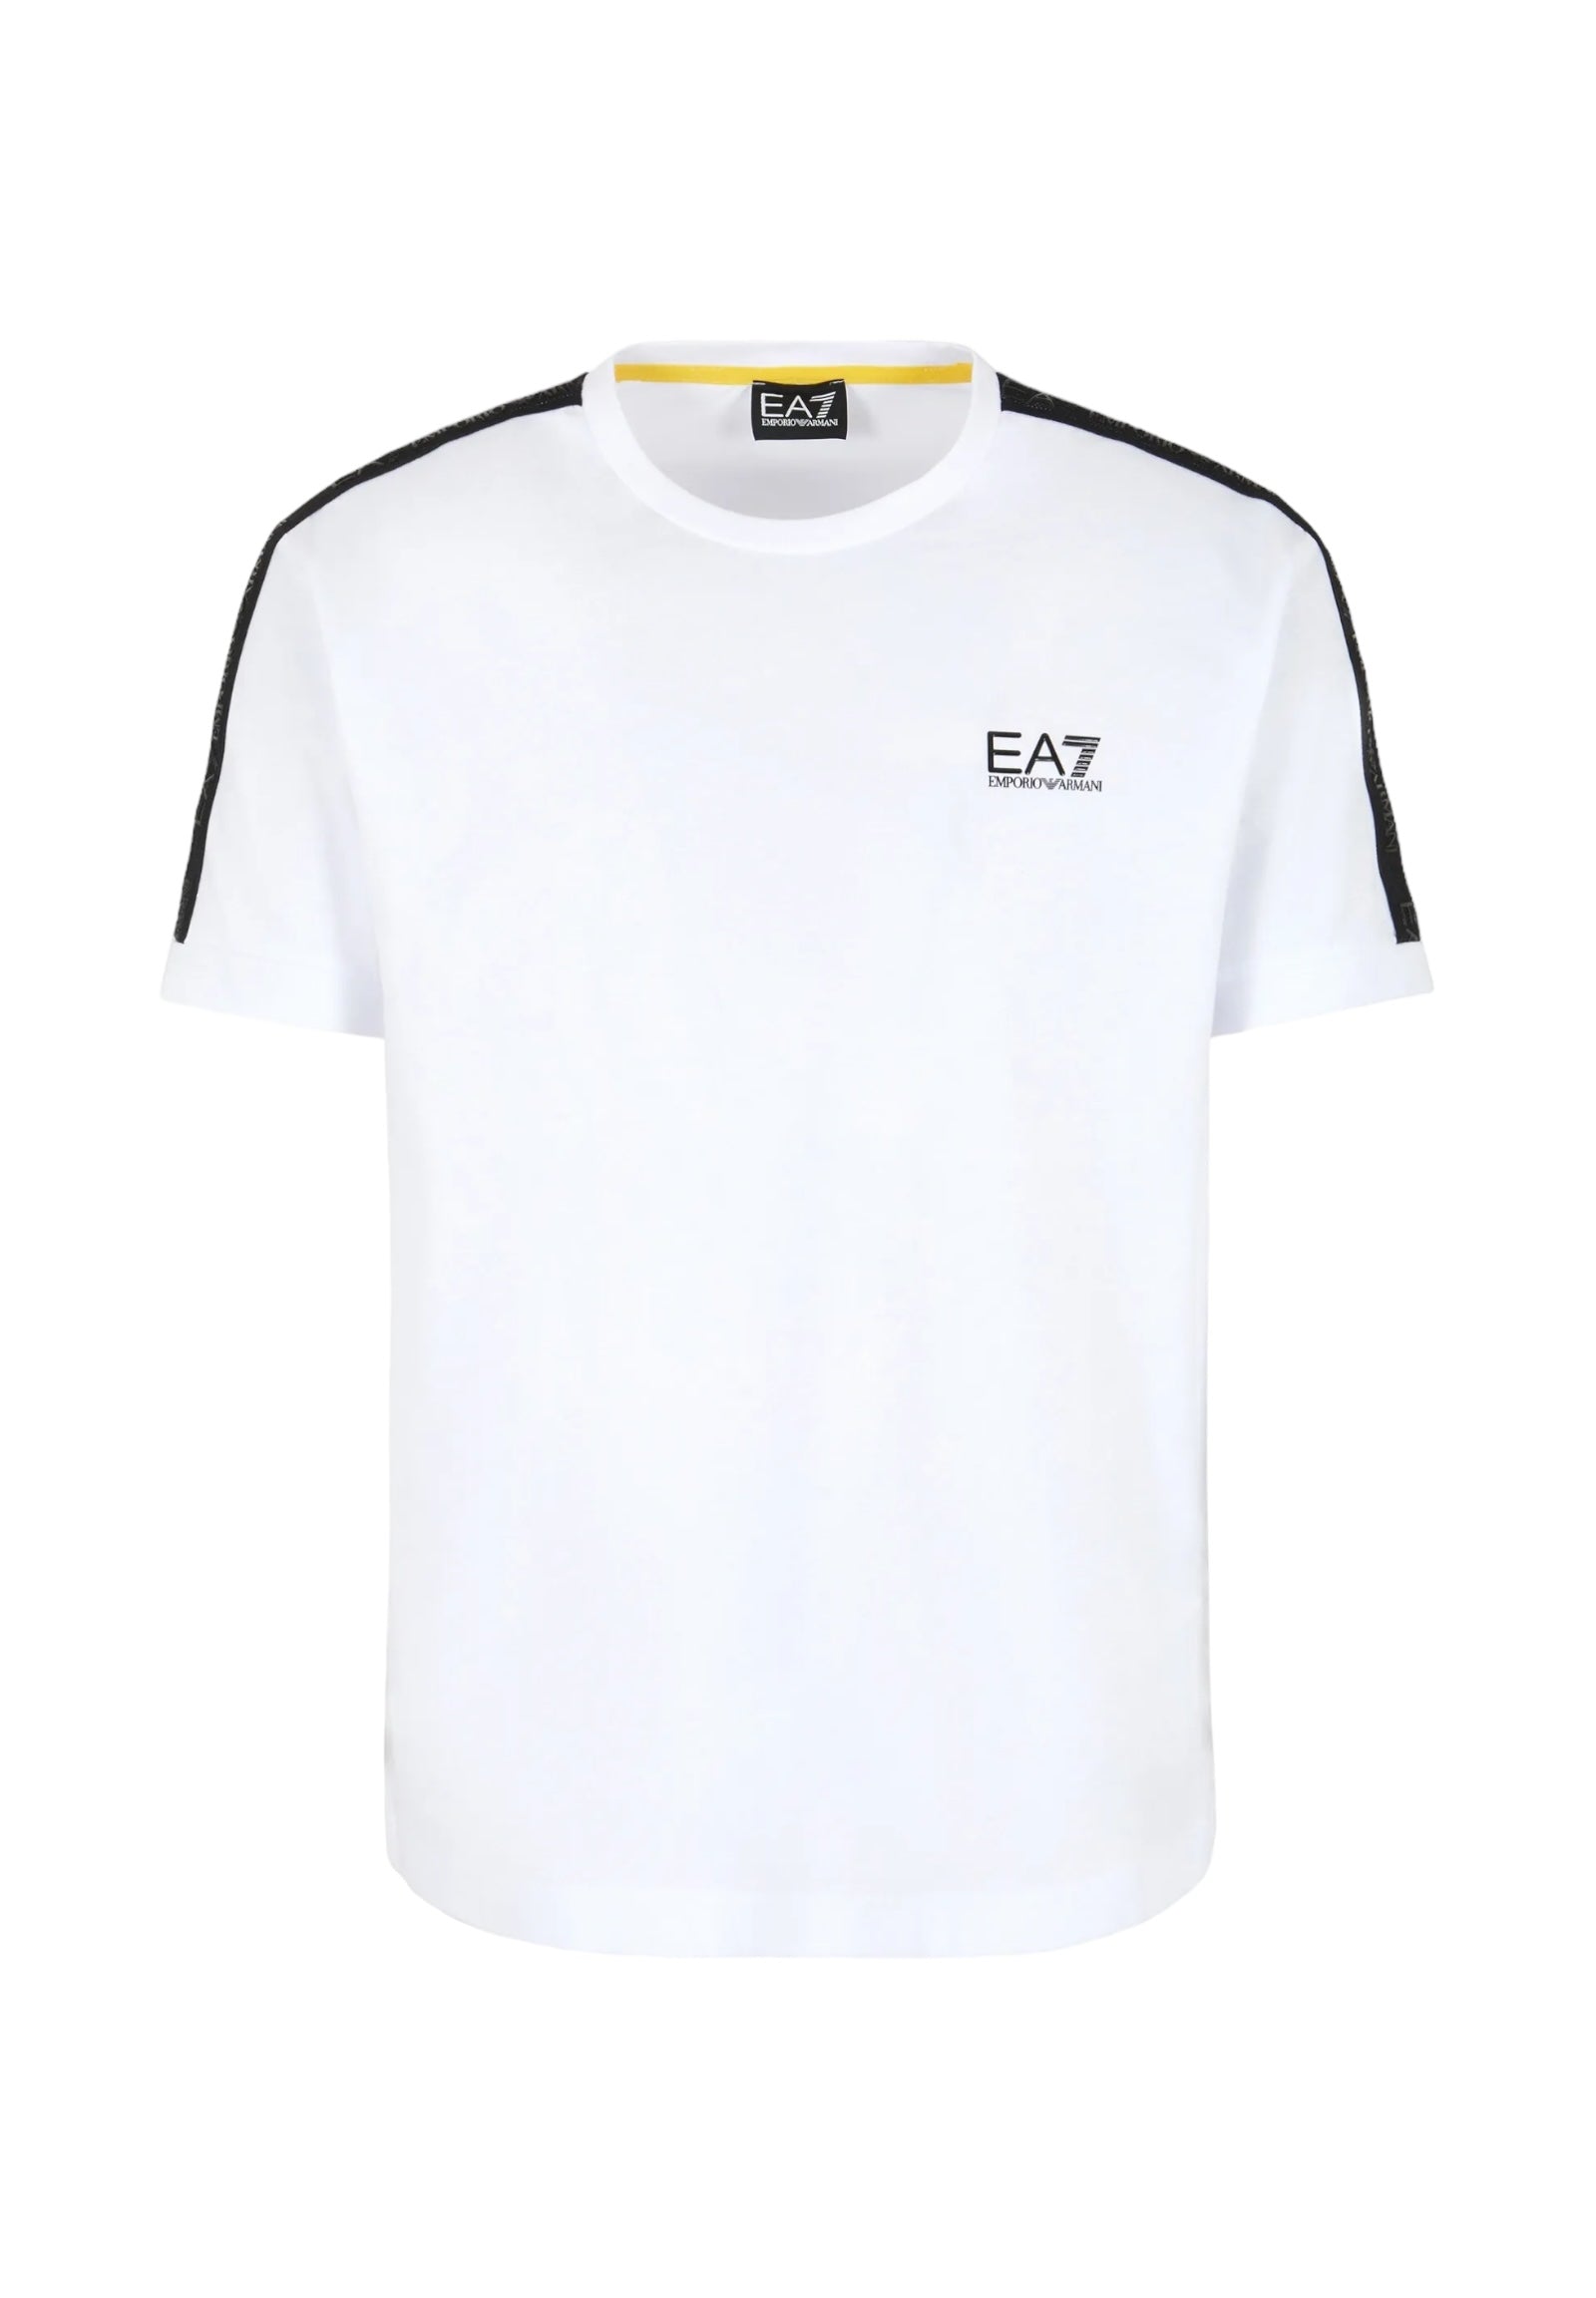 Ea7 Emporio Armani T-Shirt* 3dpt35 White